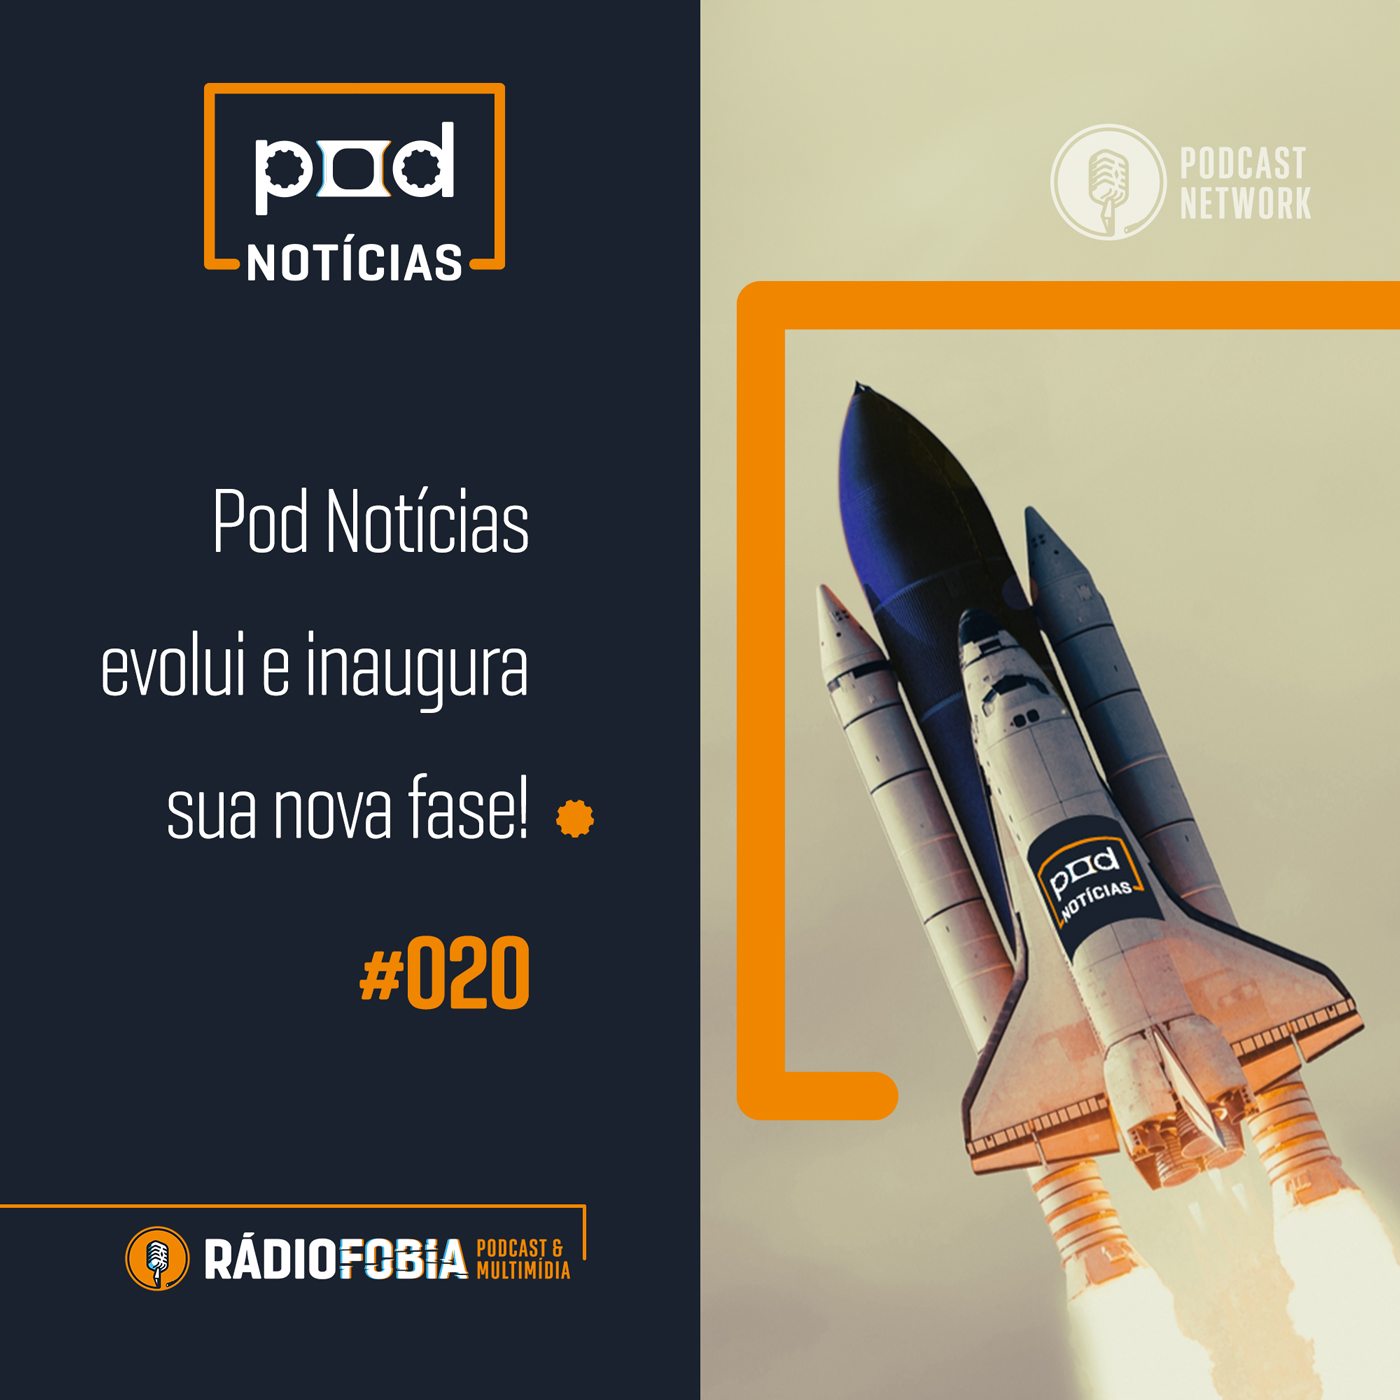 Pod Notícias 020 – Pod Notícias evolui e inaugura sua nova fase!